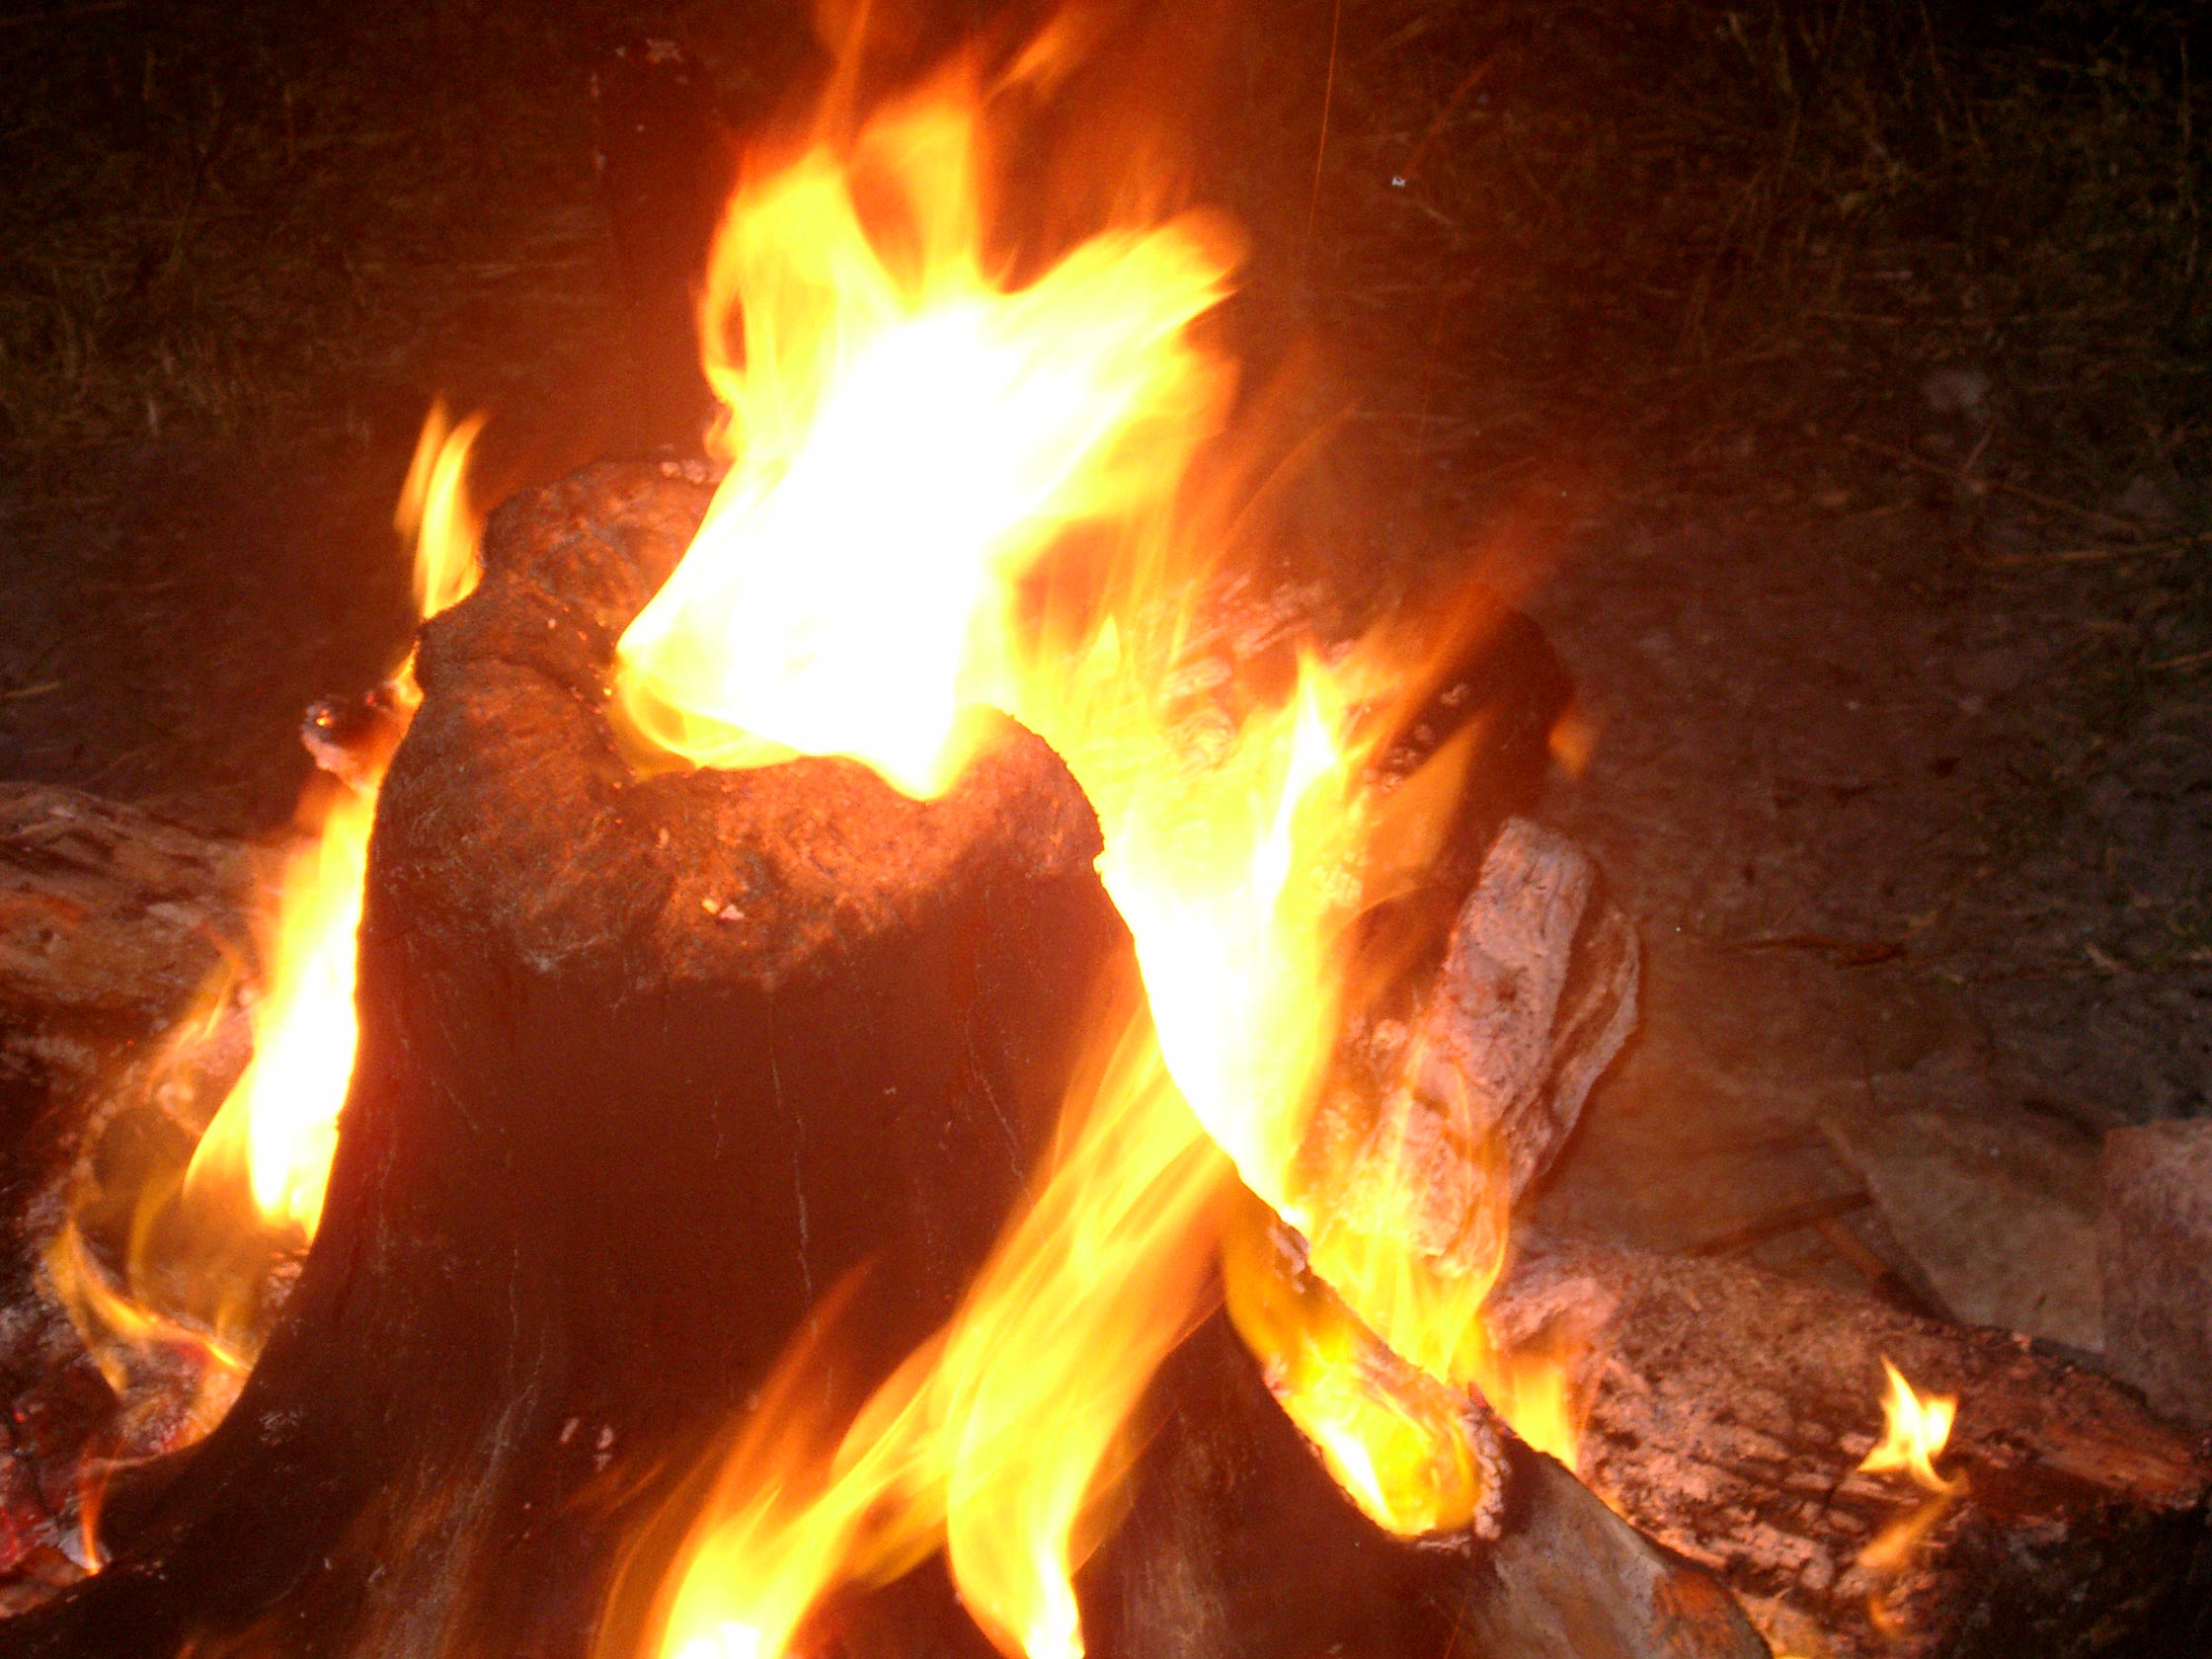 神聖な焚き火「ドゥニ」